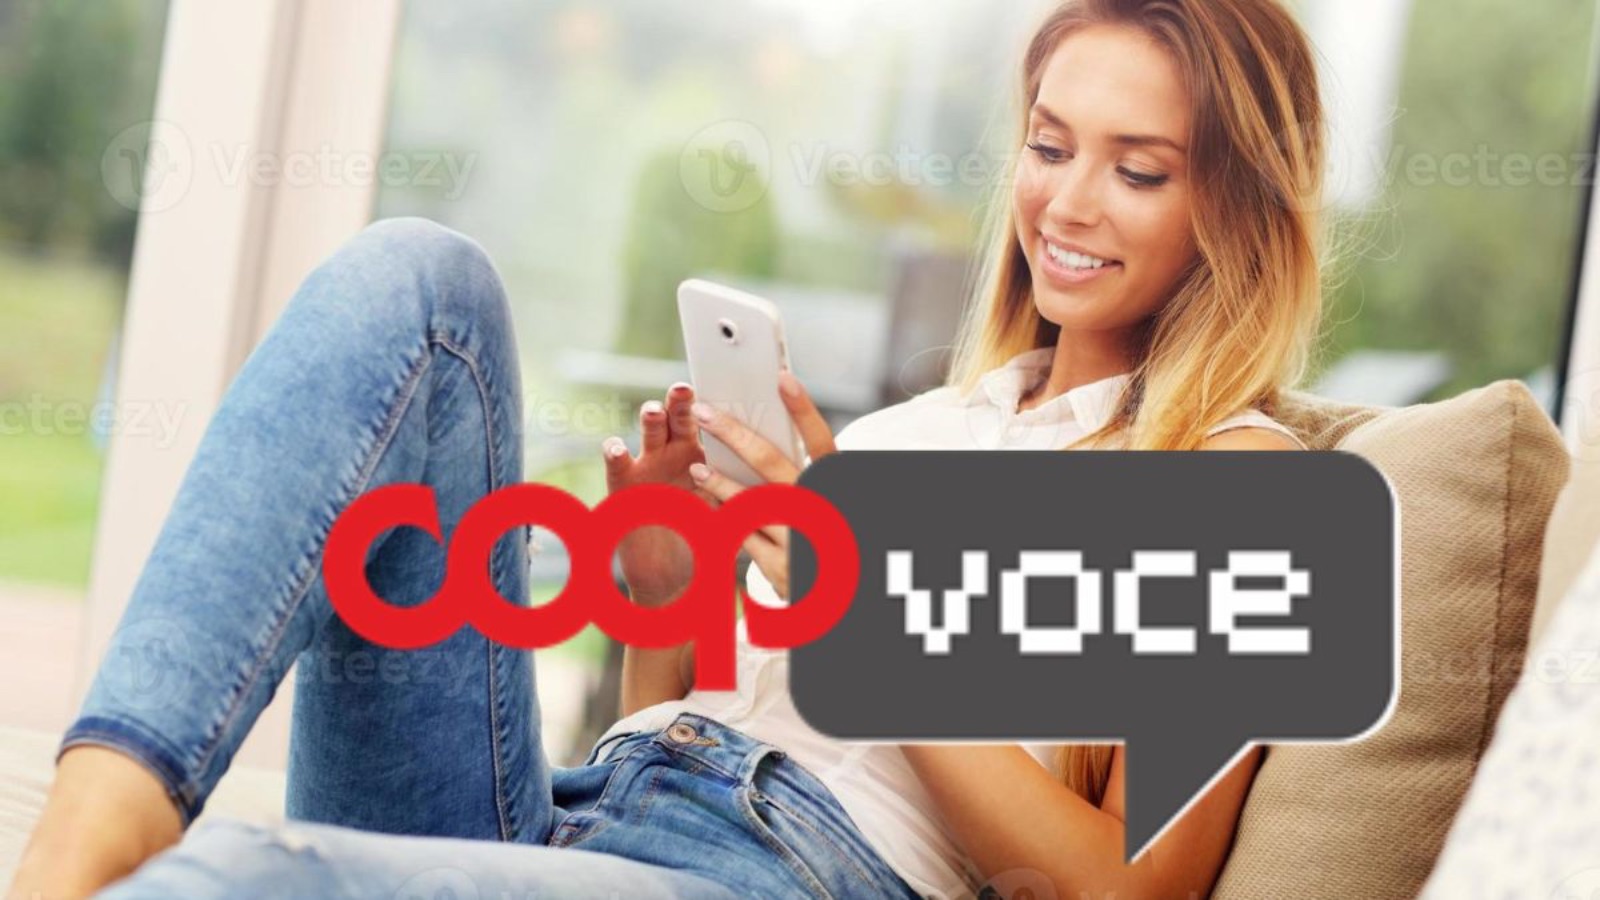 CoopVoce contro Vodafone e Iliad, 200 GIGA al mese con pochi euro